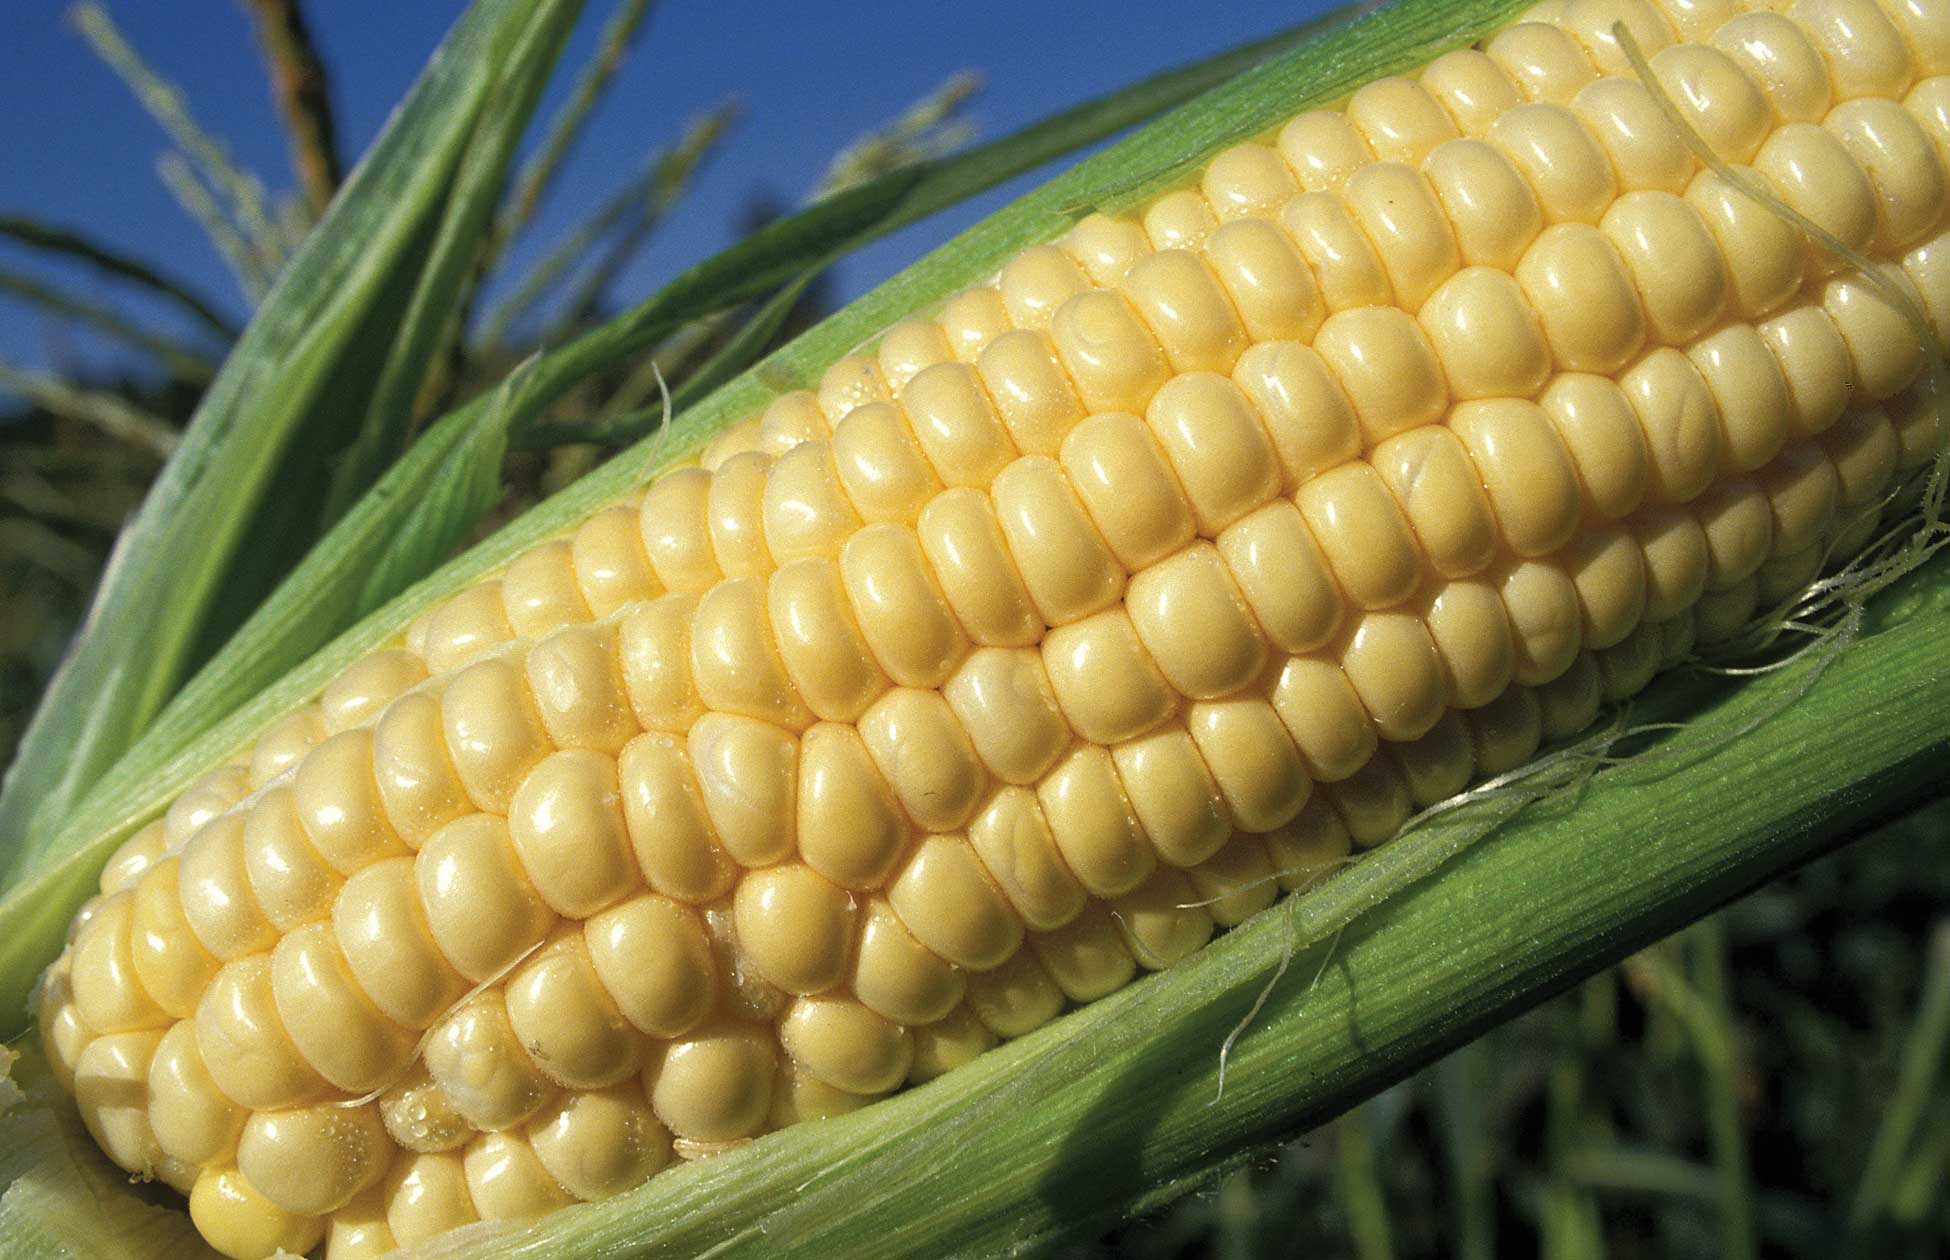 Figure 91. Corn